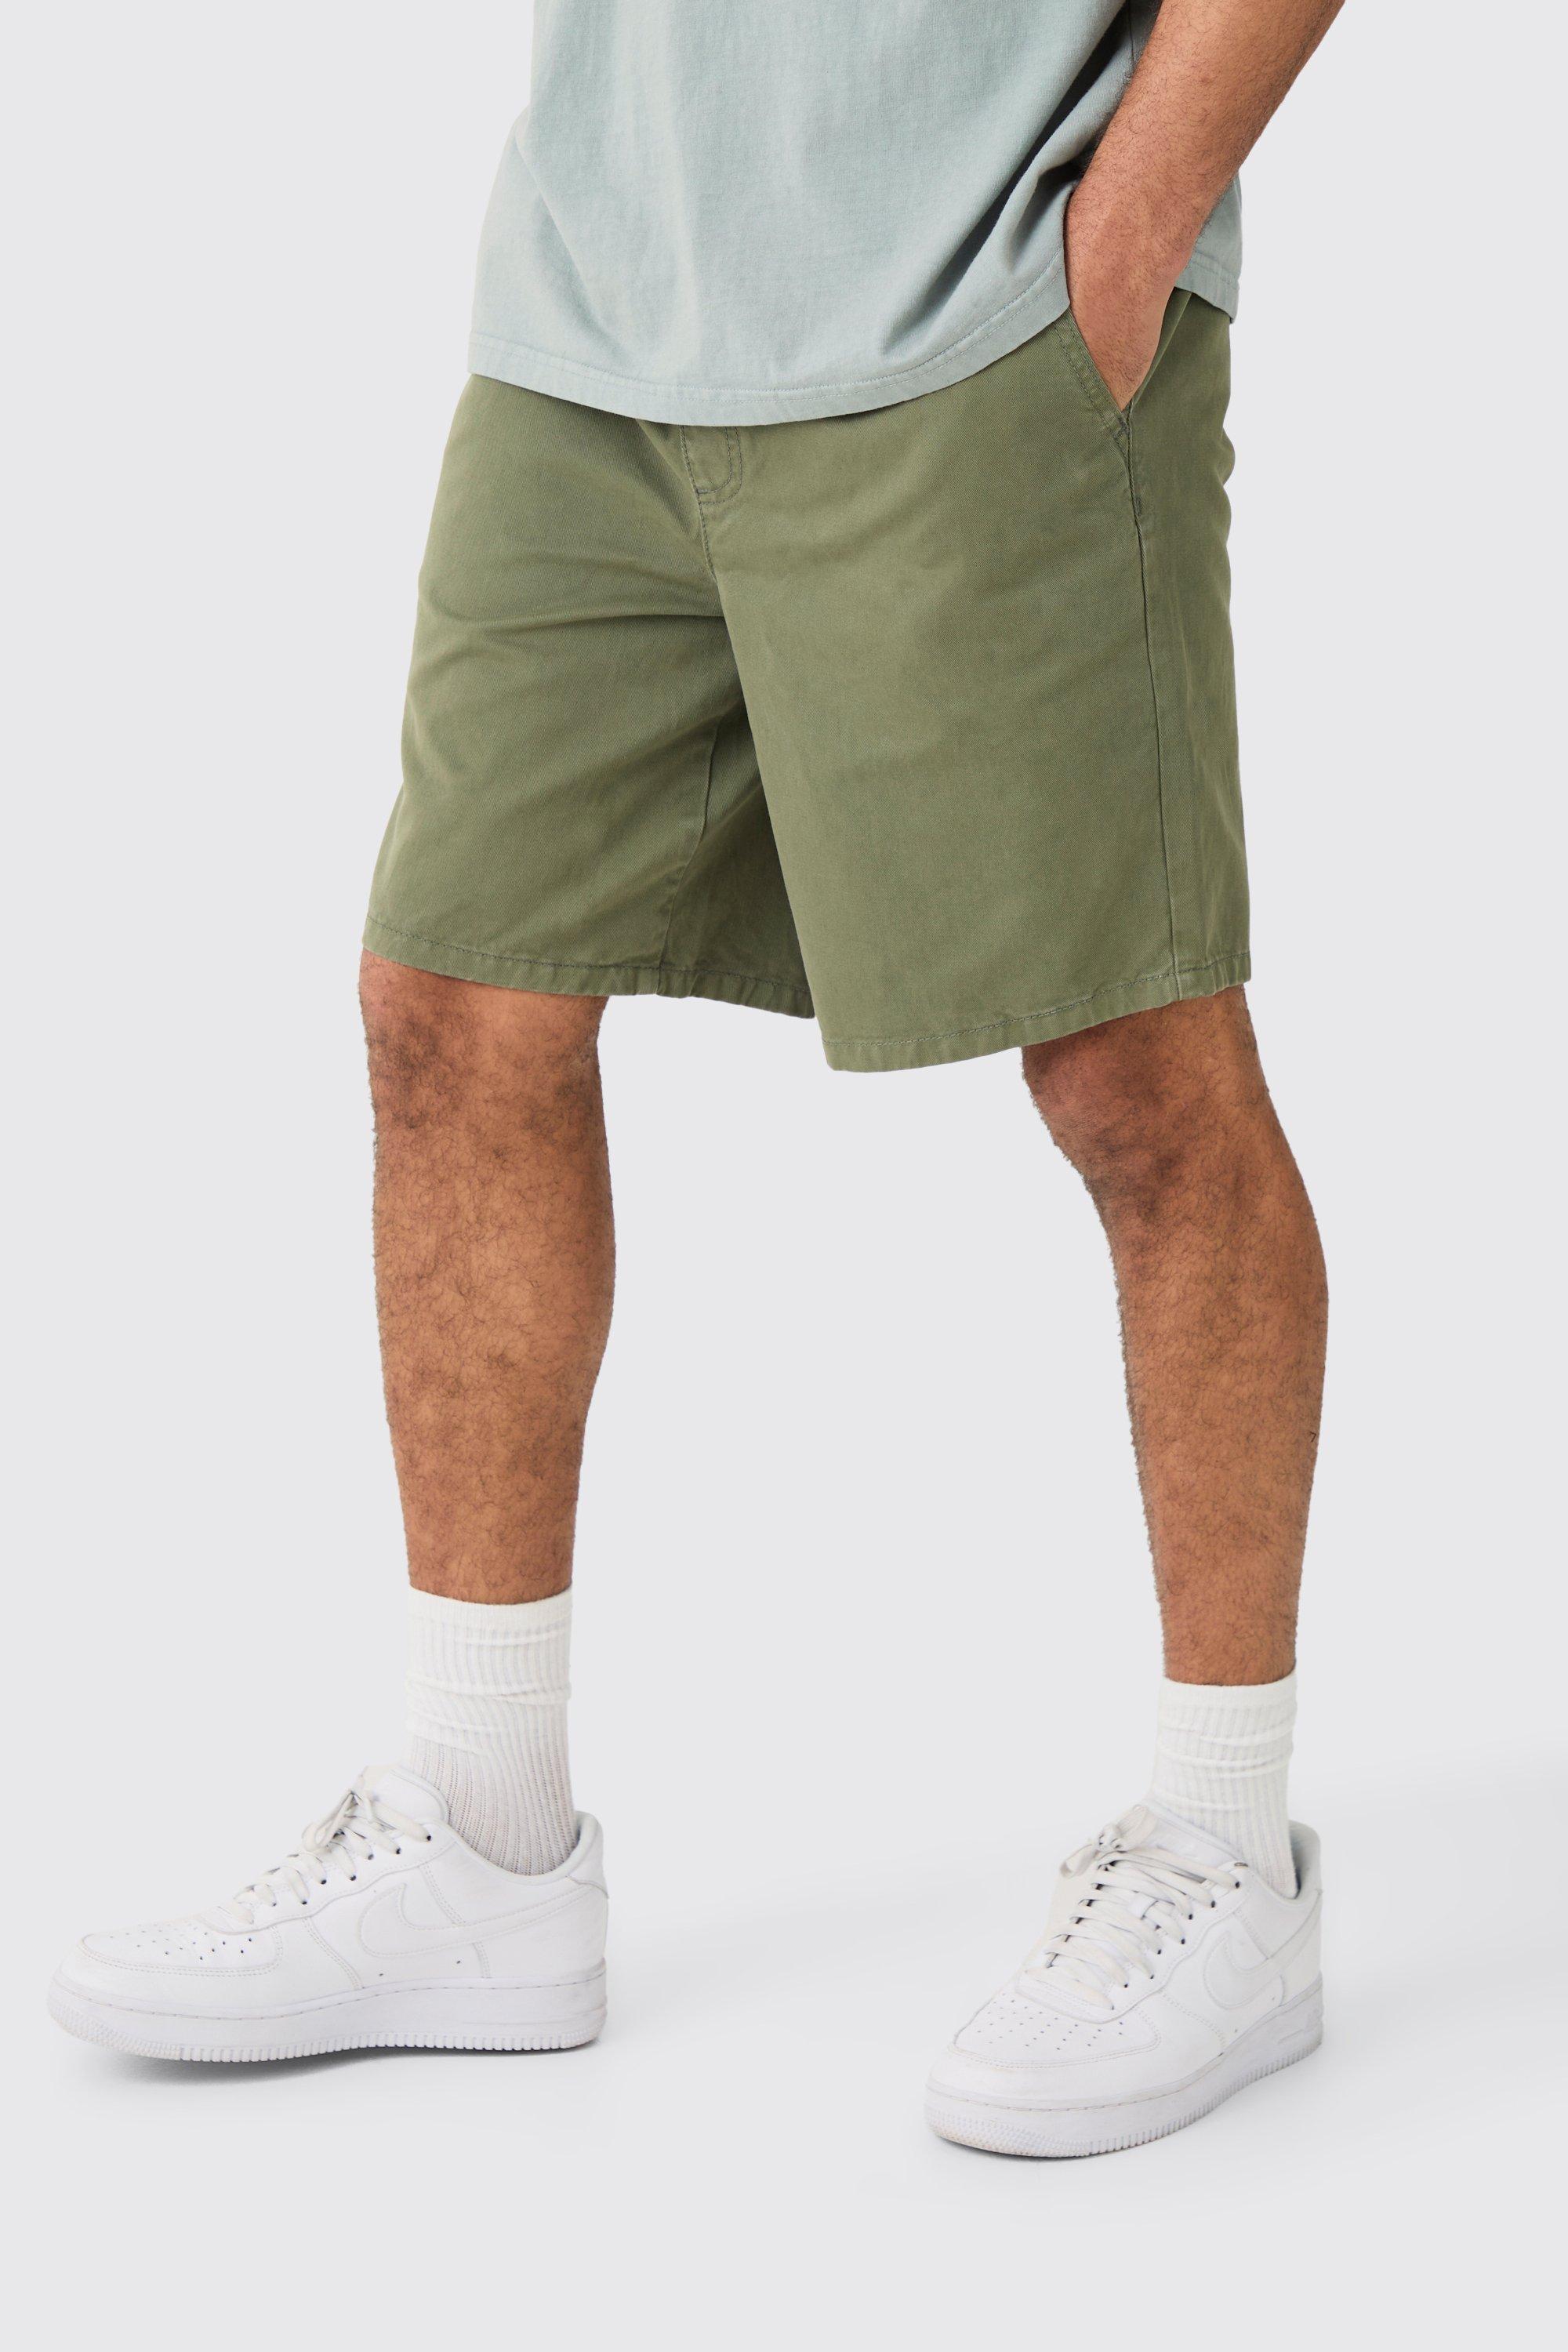 Image of Pantaloncini rilassati Everyday color kaki, Verde